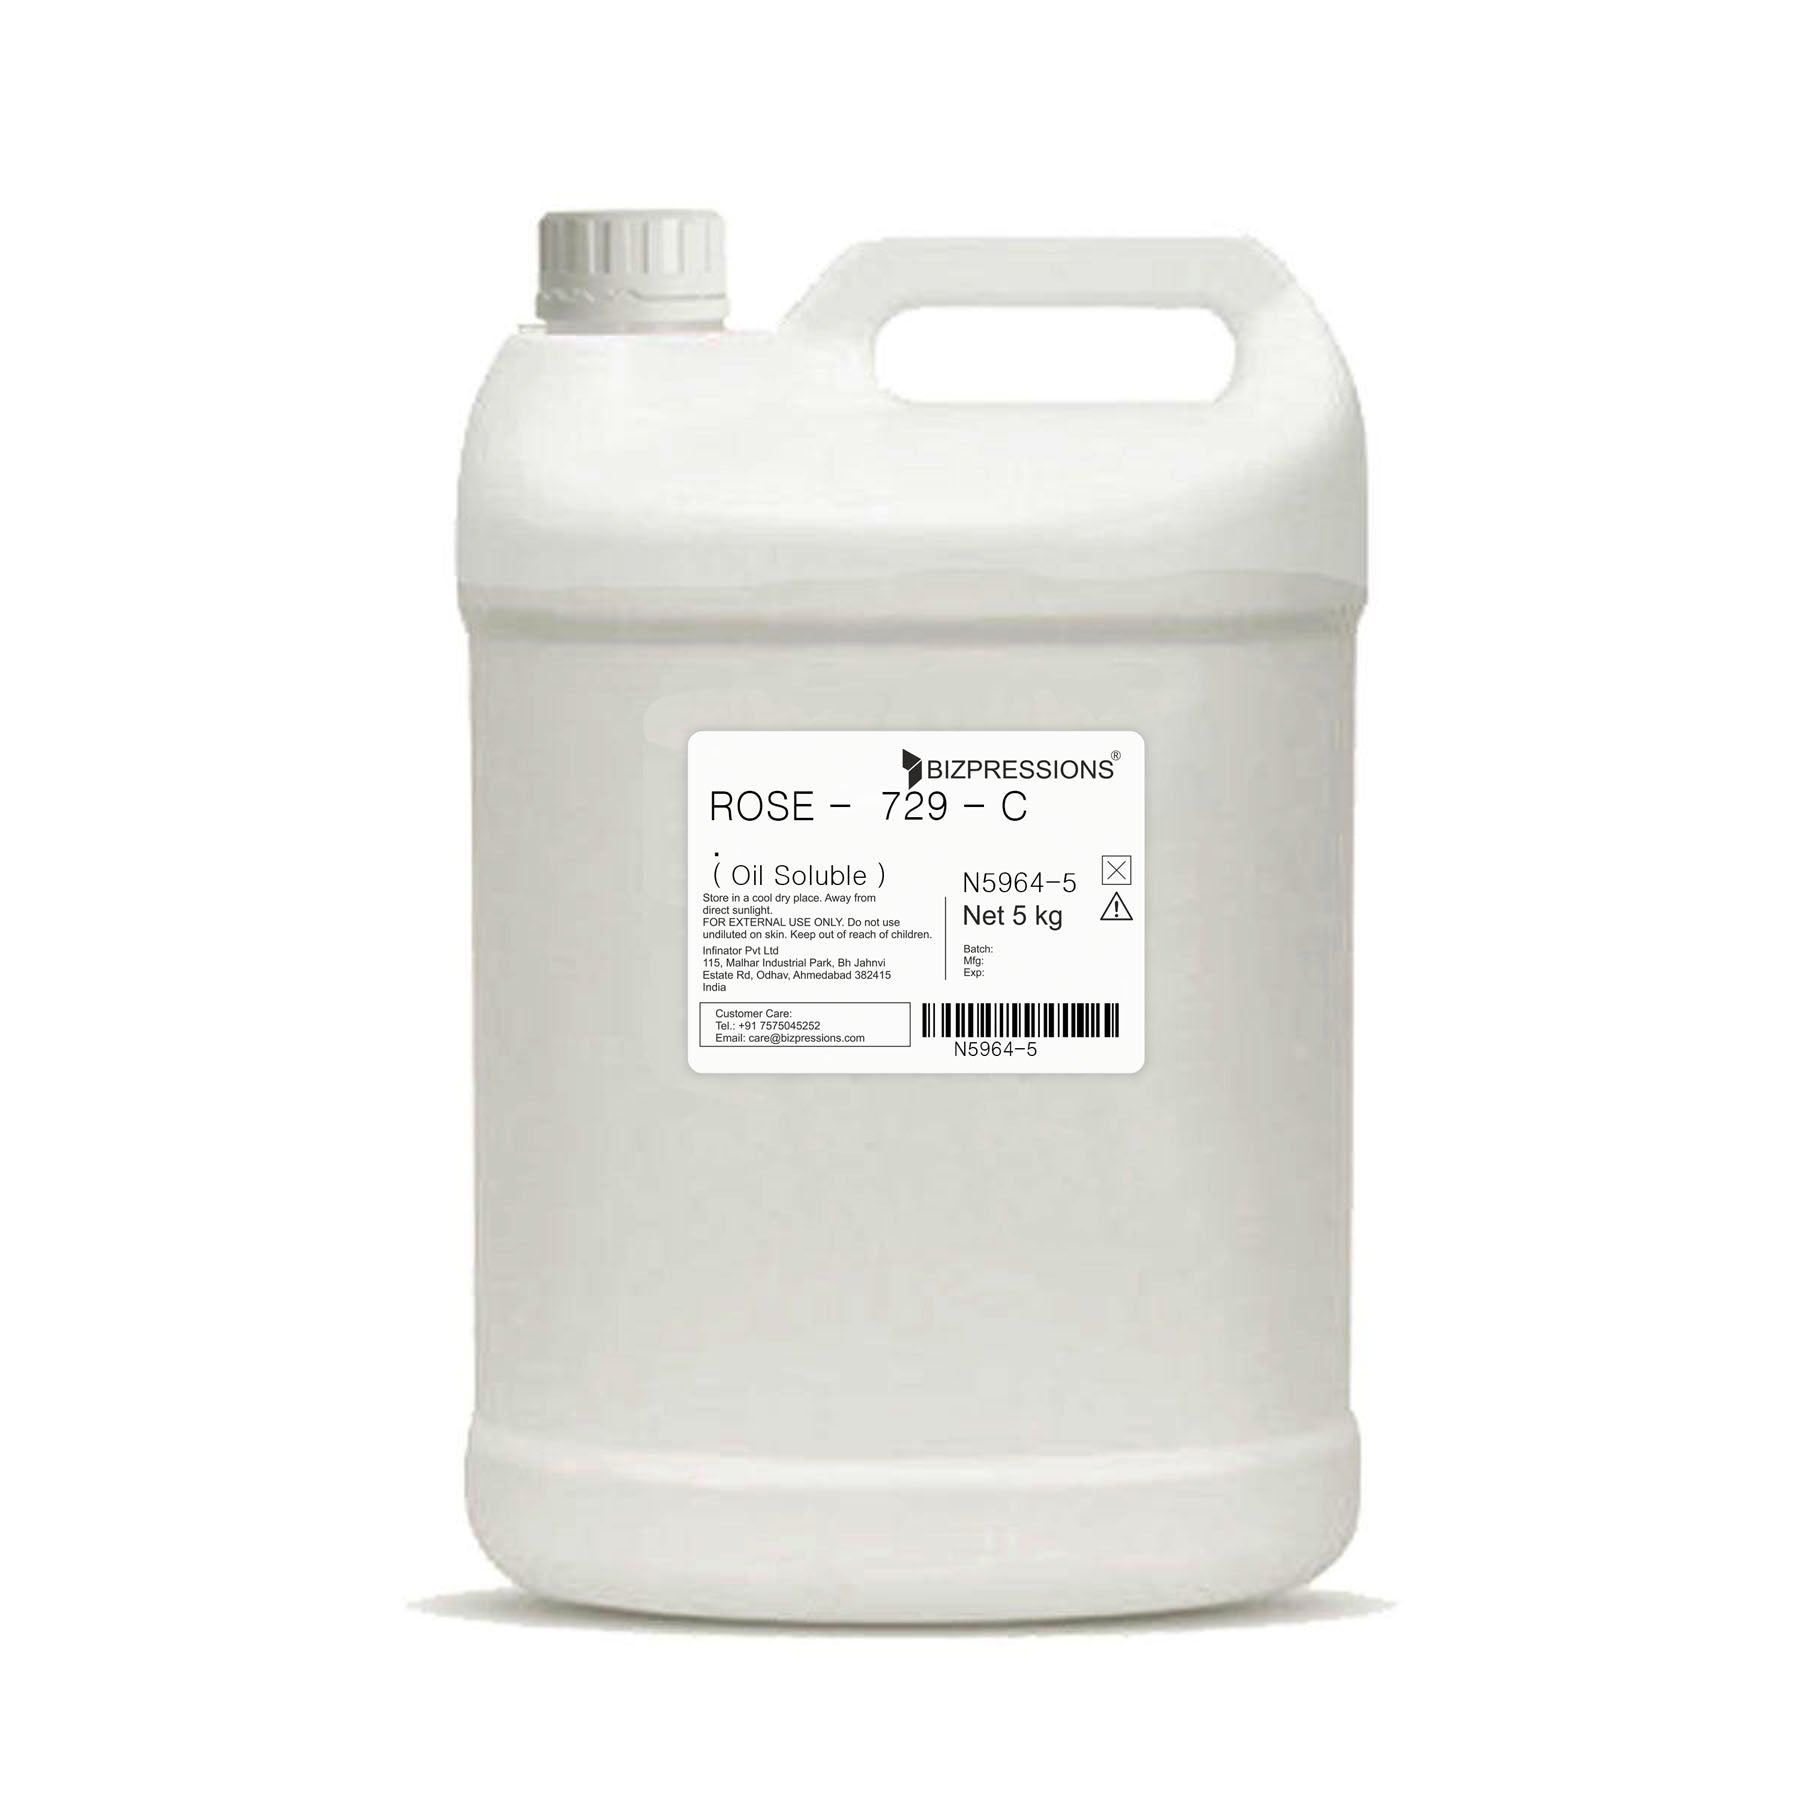 ROSE - 729 - C - Fragrance ( Oil Soluble ) - 5 kg